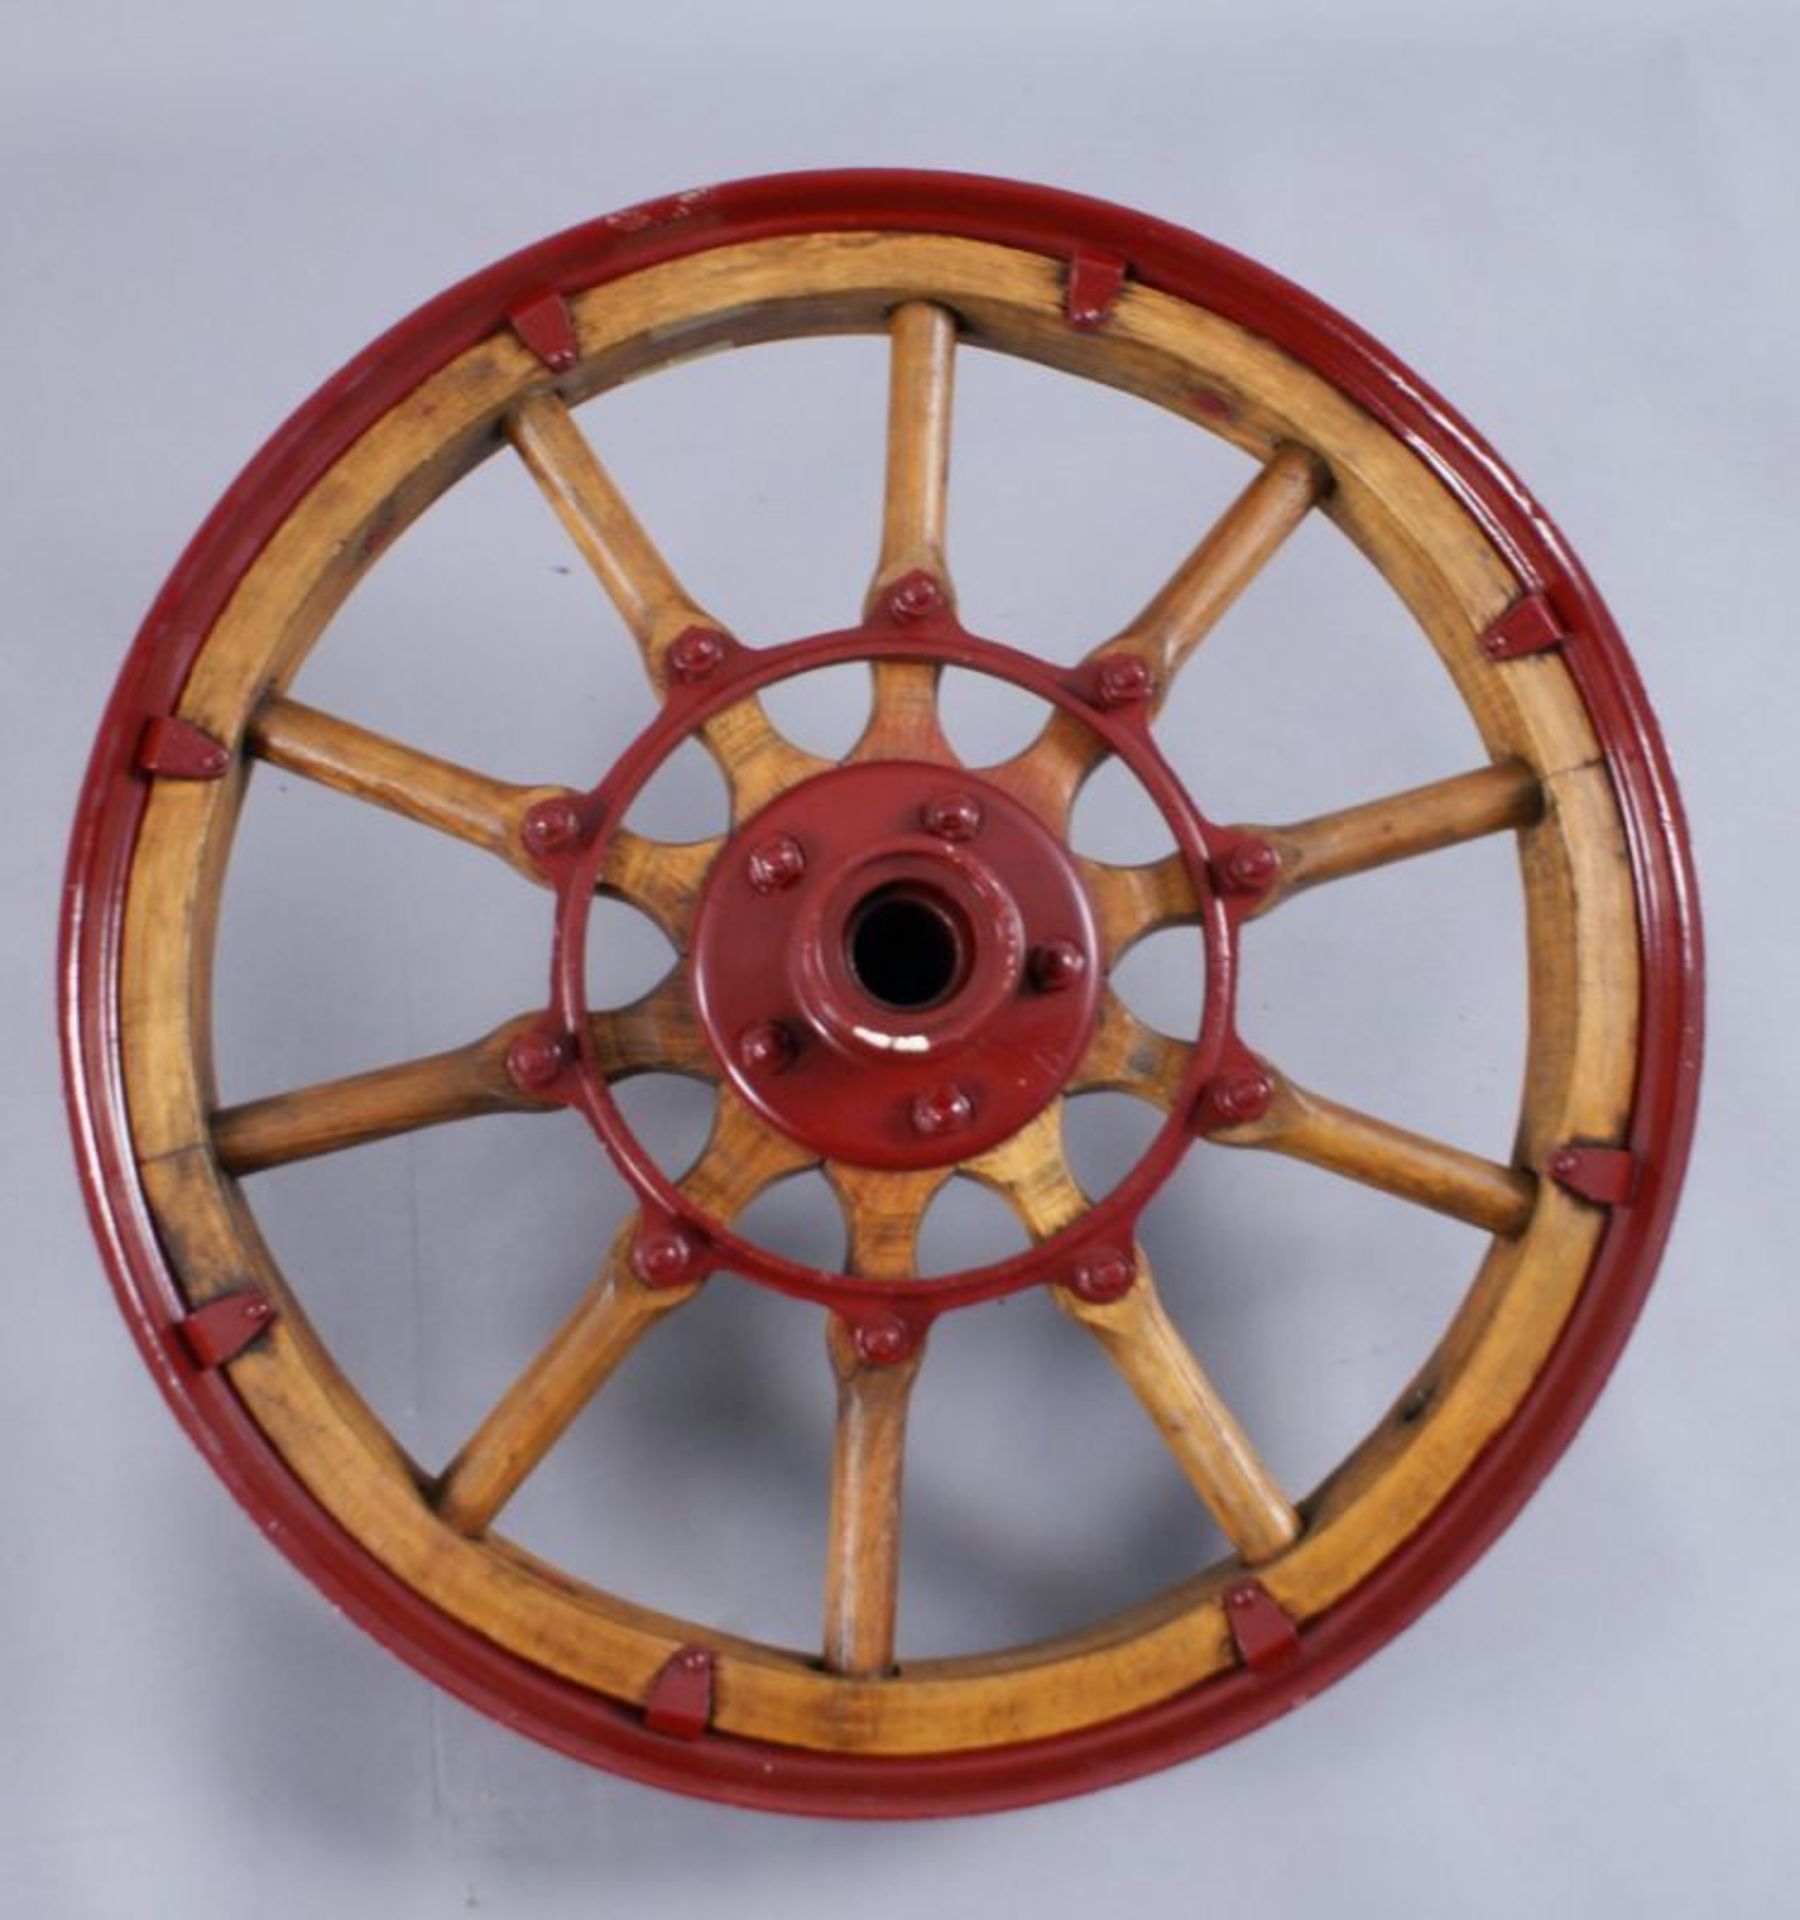 ZWEI ALTE AUTORÄDER Oldtimerfelgen aus Metall mit Holz, rot lackiert, wohl 20er/30er Jahre, - Bild 7 aus 7